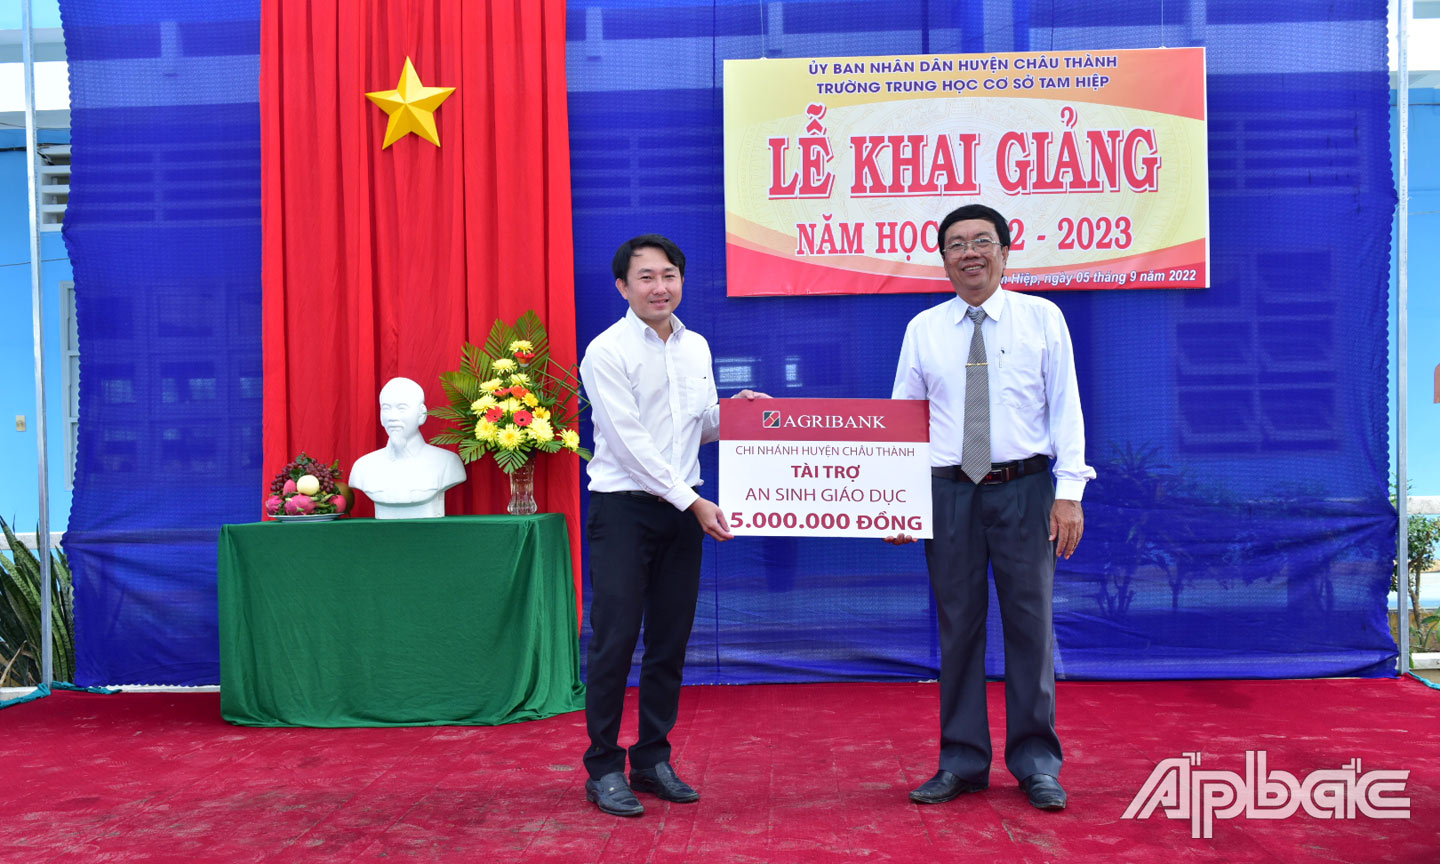 Đại diện Agribank huyện Châu Thành trao biển tượng trưng số tiền ủng hộ cho đại diện Trường Trung học cơ sở Tam Hiệp